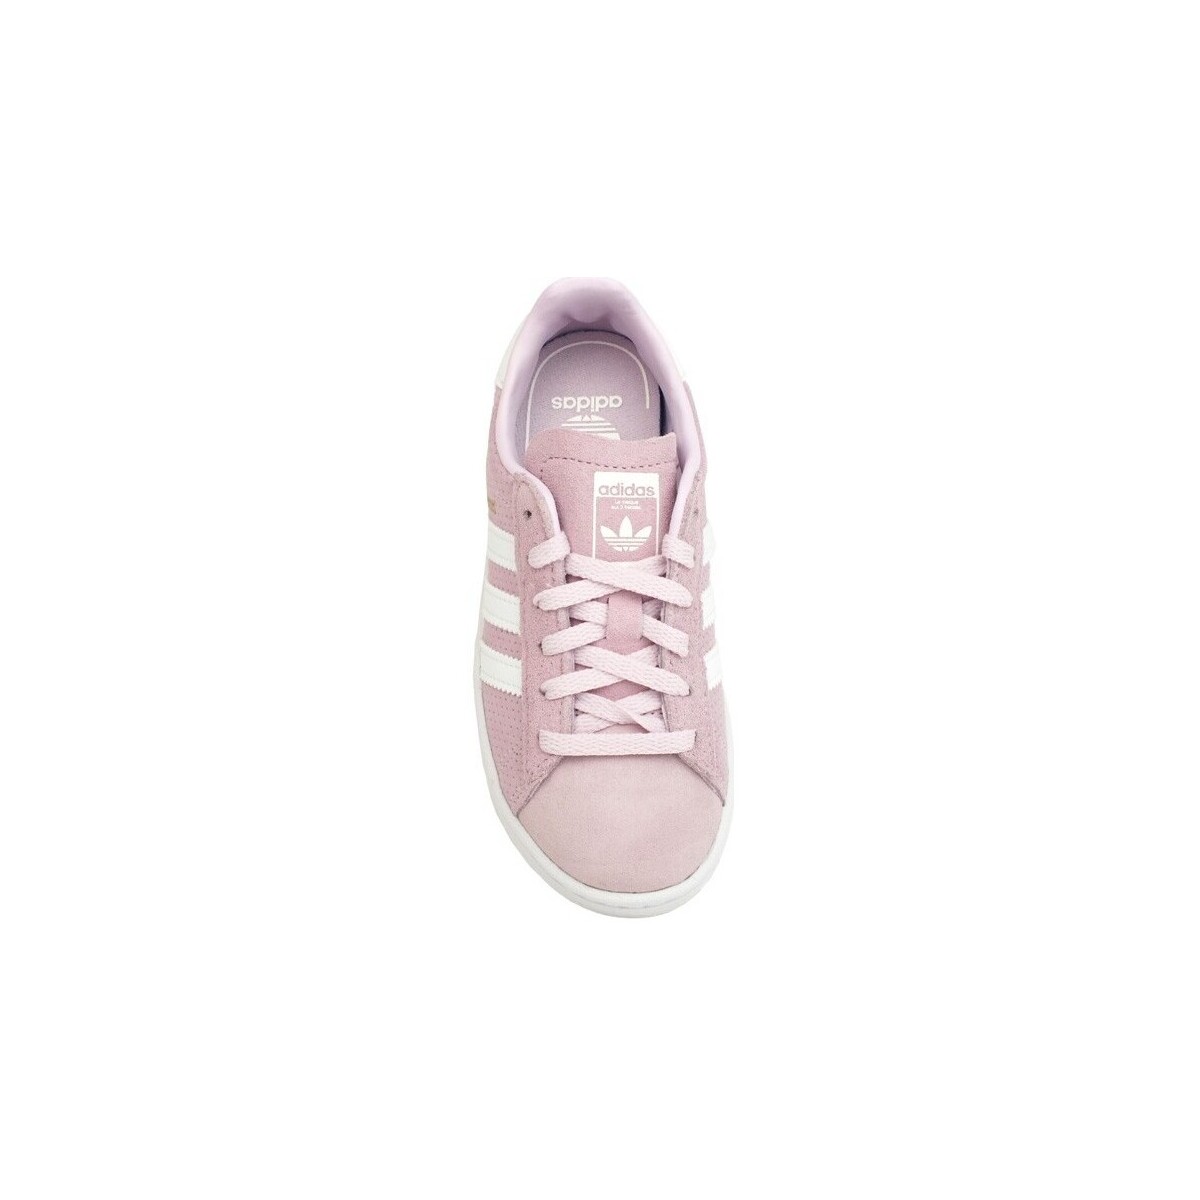 adidas Originals Rose Campus C White Pink CQ2959 rPiO43pI